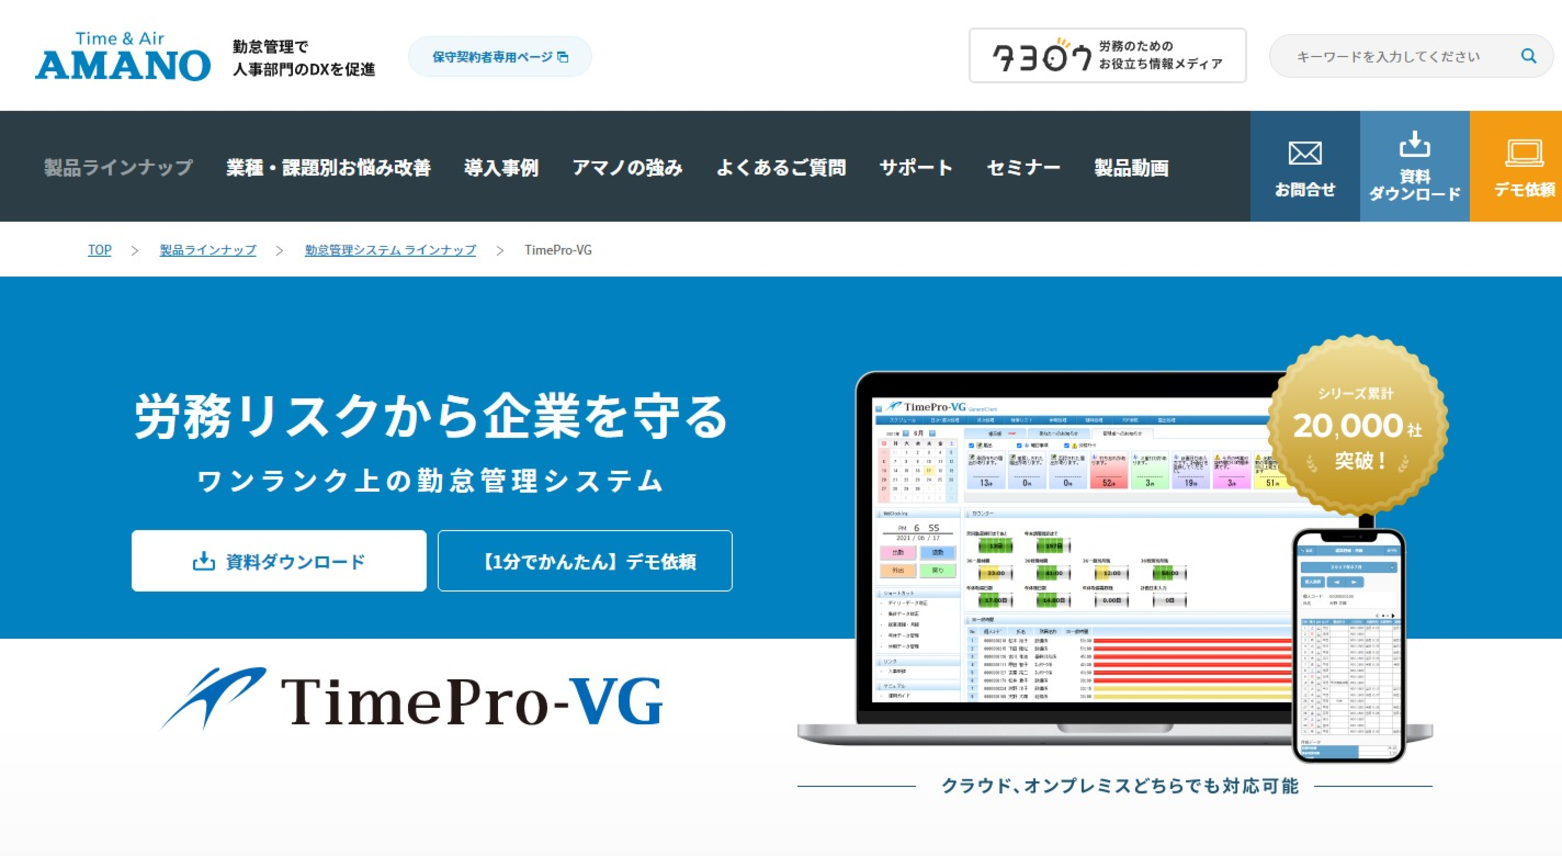 TimePro-VG 公式サイト